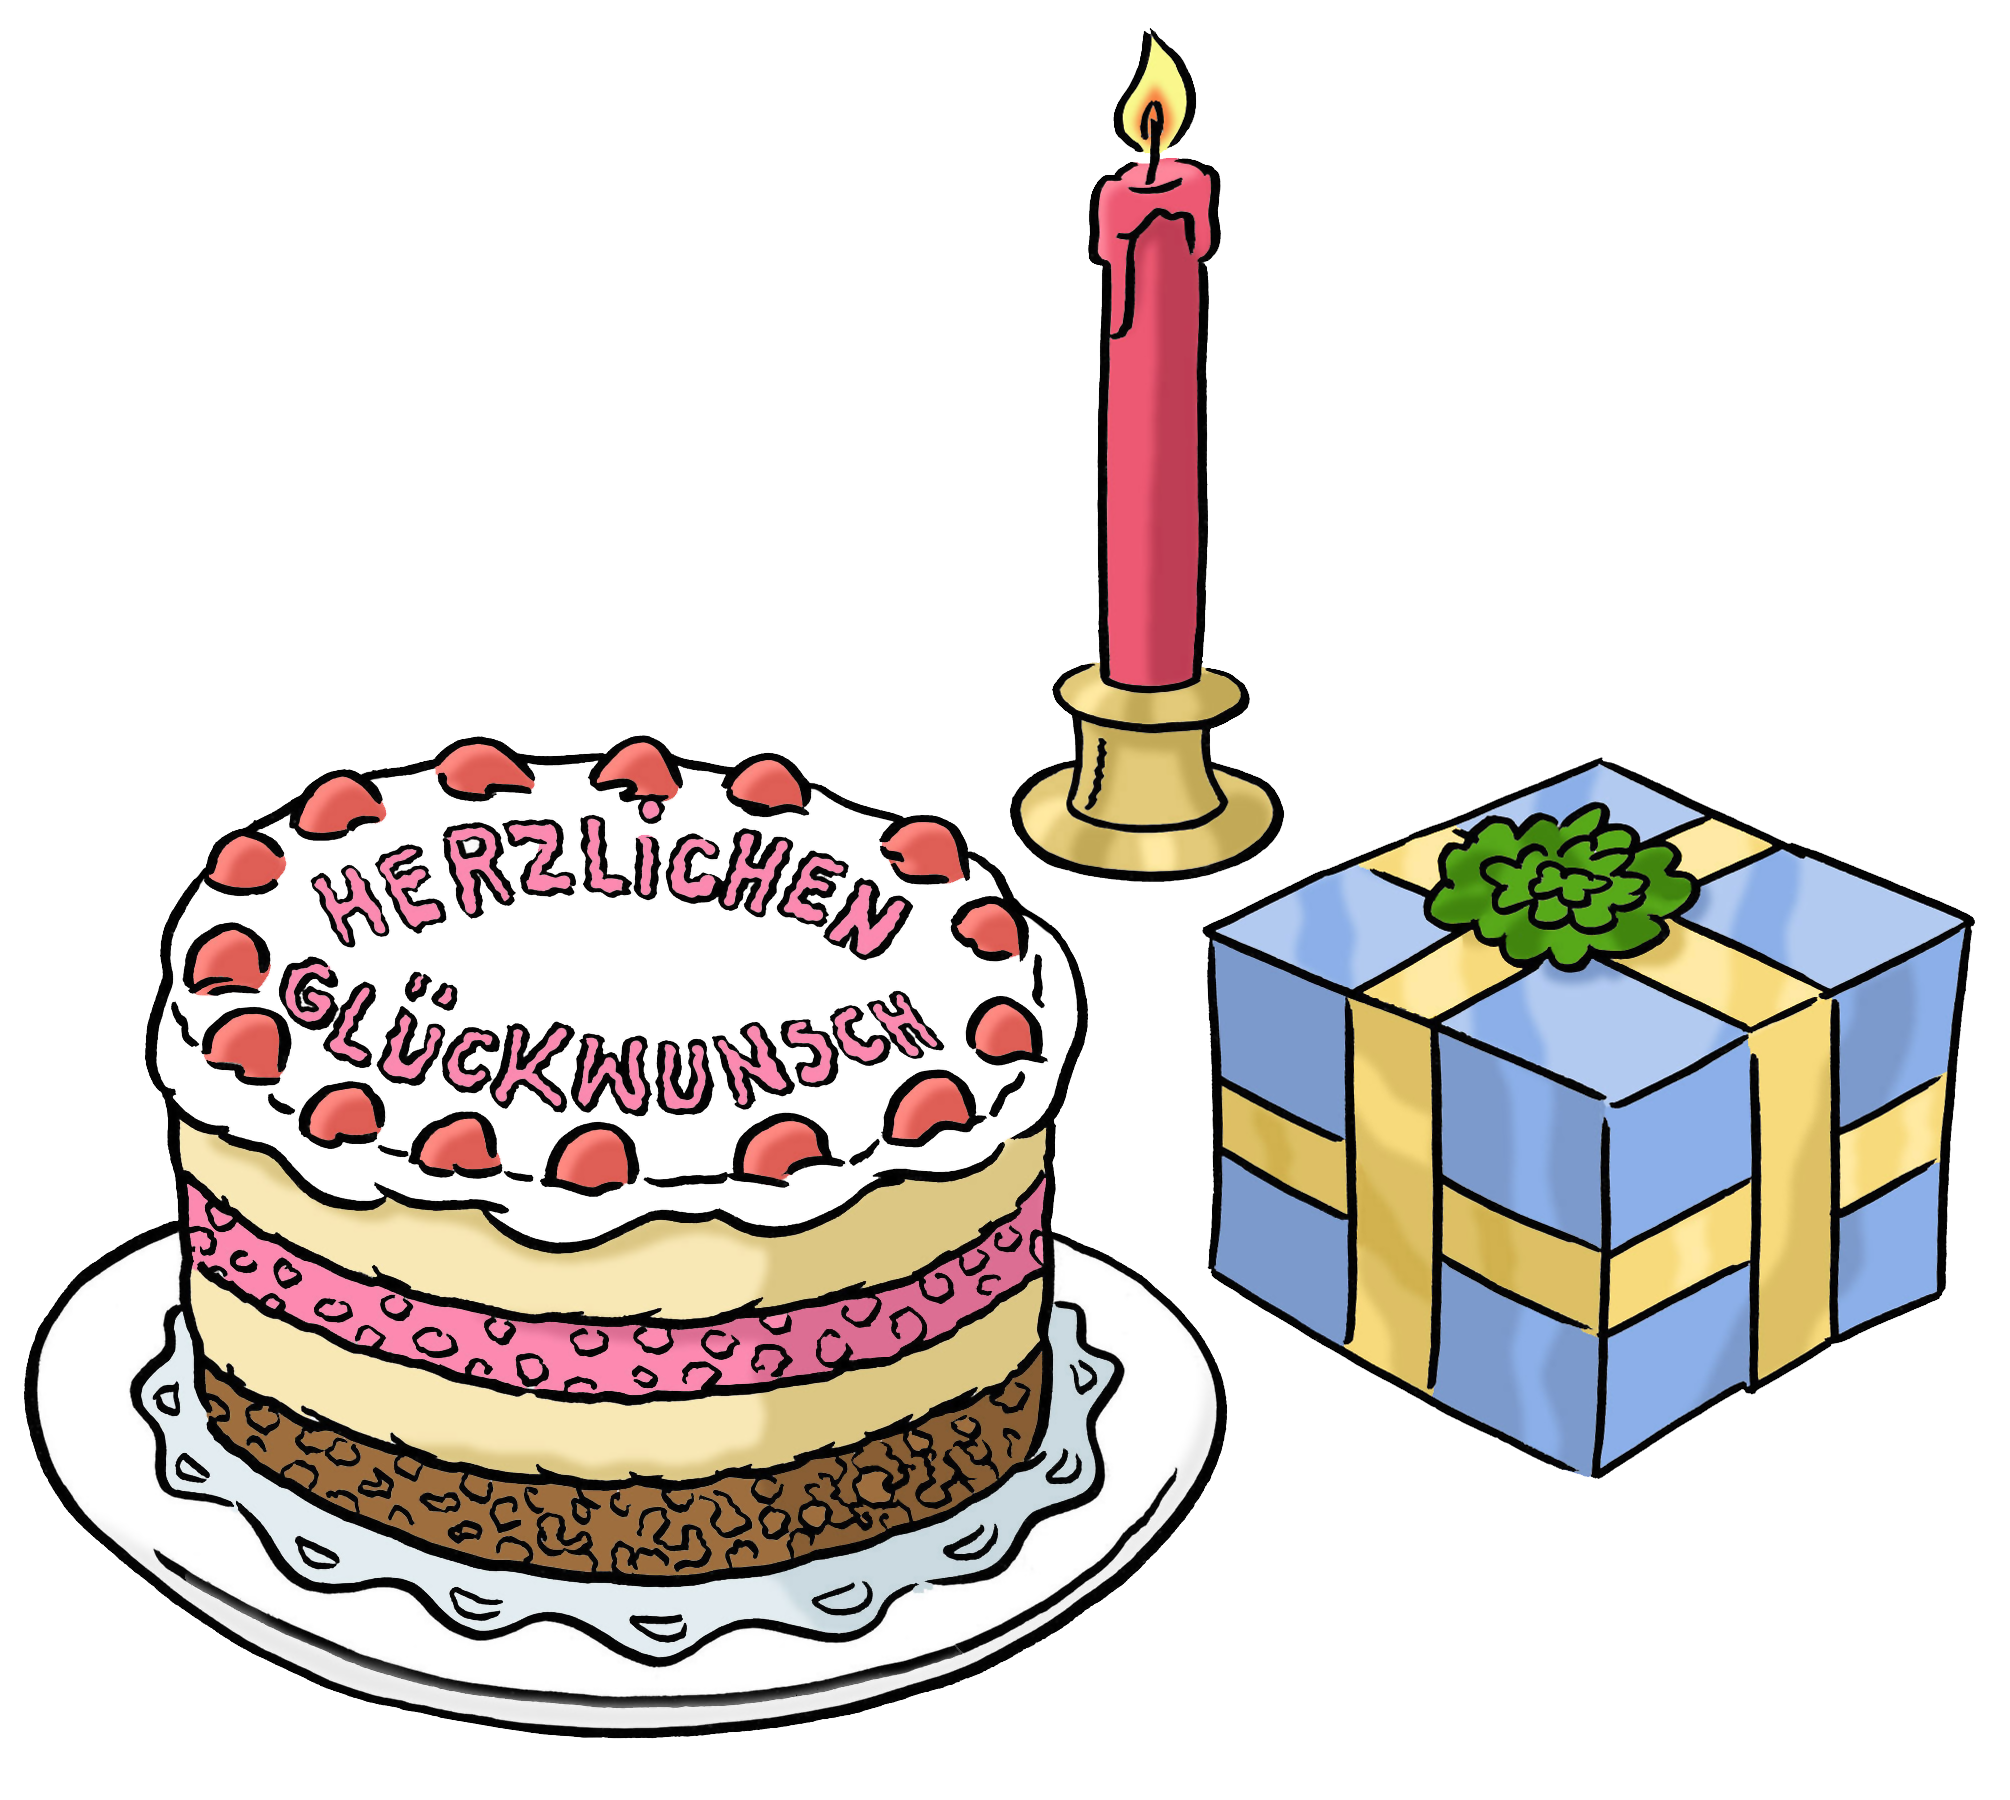 Leichte Sprache Bild: Ein Geburtstagskuchen, eine angezündete Kerze und ein Geschenk